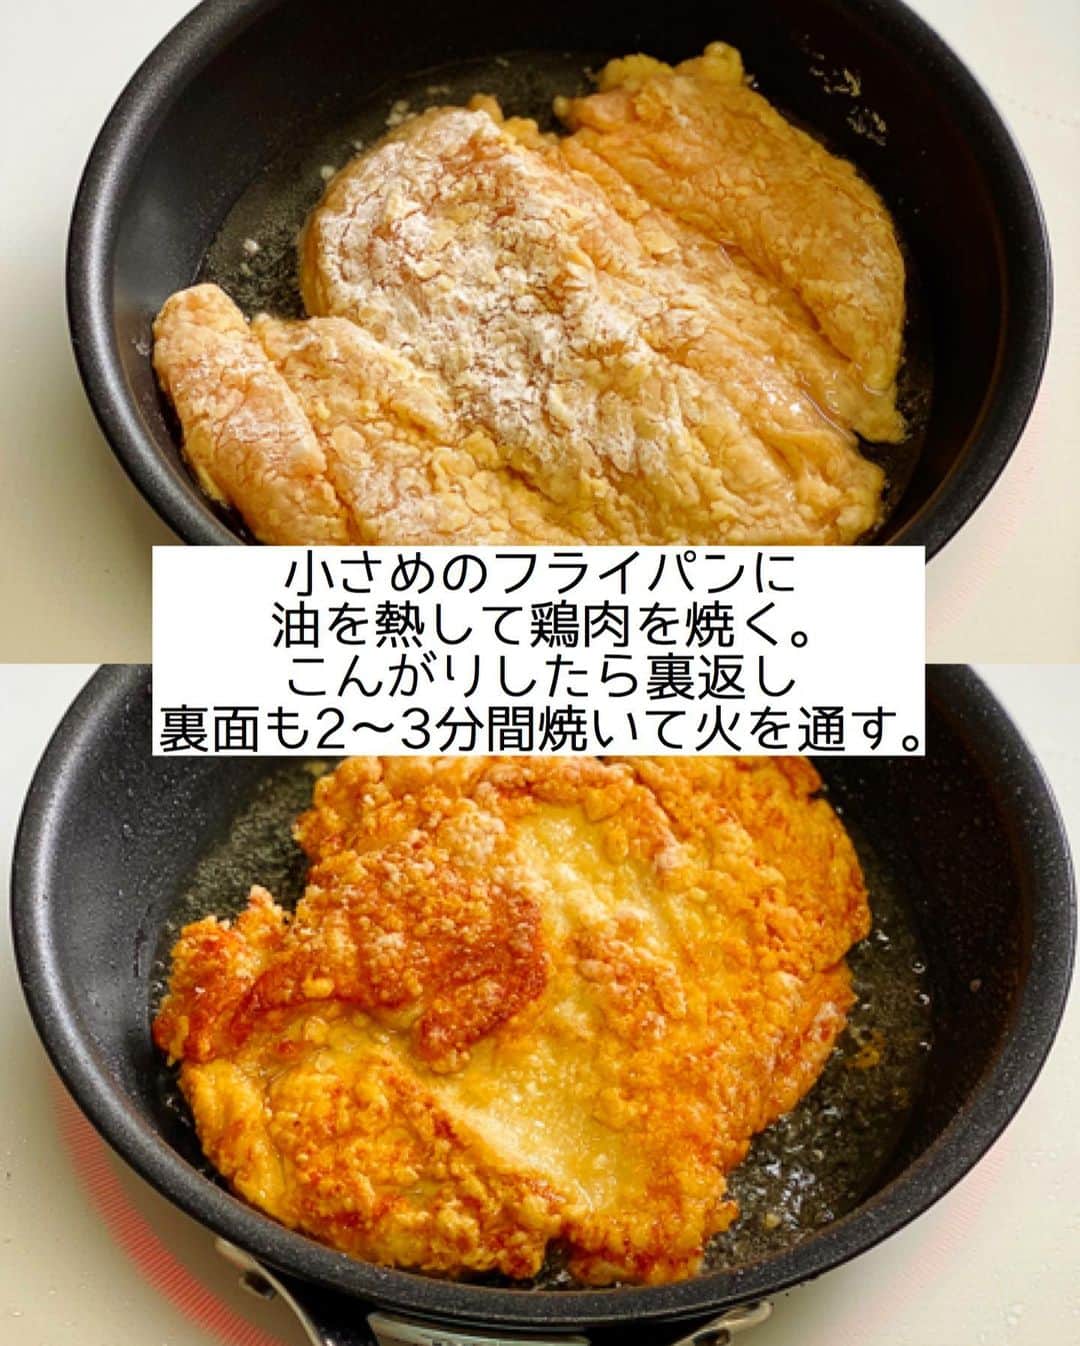 Mizuki【料理ブロガー・簡単レシピ】さんのインスタグラム写真 - (Mizuki【料理ブロガー・簡単レシピ】Instagram)「・﻿ 【#レシピ 】ーーーーーーーーーーーーー﻿ ♡油大3！鶏むね肉de焼きチキン竜田♡﻿ ーーーーーーーーーーーーーーーーーーー﻿ ﻿ ﻿ ﻿ おはようございます(*^^*)﻿ ﻿ 今日ご紹介させていただくのは﻿ \ 揚げずに作れるチキン竜田 /﻿ ﻿ 鶏むね肉でコスパ抜群！﻿ しかも油は大3杯！﻿ 甘酢っぱいごまだれをかけて﻿ 簡単豪華に仕上げました(*´艸`)﻿ ﻿ 小さなフライパンを使い﻿ 鶏肉をドーンっと入れることで﻿ 少ない油でも嵩が上がり﻿ まるで揚げたかのように仕上がりますよ♩﻿ ﻿ ﻿ ﻿ ＿＿＿＿＿＿＿＿＿＿＿＿＿＿＿＿＿＿＿＿﻿ 【2人分】﻿ 鶏むね肉...大1枚(300g)﻿ ●醤油・酒...各大1/2﻿ ●生姜チューブ...3cm﻿ 片栗粉...適量﻿ サラダ油...大3﻿ ☆醤油・みりん・白ごま...各大1.5﻿ ☆砂糖・酢・ごま油...各小2﻿ ﻿ 1.鶏肉は身の厚い部分を開いて全体をフォークで刺し、●を揉み込み、片栗粉をしっかりまぶす。耐熱ボウルに☆を入れ、600Wのレンジで1分加熱する(←たれ)。﻿ 2.小さめのフライパンにサラダ油を中火で熱し、鶏肉を焼く。こんがりしたら裏返し、裏面も2〜3分間焼いて火を通す。﻿ 3.2を食べやすい大きさに切り、1のたれをかける。﻿ ￣￣￣￣￣￣￣￣￣￣￣￣￣￣￣￣￣￣￣￣﻿ ﻿ ﻿ ﻿ 《ポイント》﻿ ♦︎直径20cmのフライパンを使用しています♩﻿ ♦︎片栗粉は全体にたっぷりまぶして下さい♩﻿ ♦︎鶏肉はしっかり焼き色が付いてから裏返して下さい♩(再掲載です)﻿ ﻿ ﻿ ﻿ ﻿ ﻿ ﻿ ﻿ 昨夜は''なりすましの件''で﻿ お騒がせ致しました😢﻿ おかげさまで今はもう見つからないのですが﻿ 最近増えているようなのでご注意下さいね😭﻿ カタコトのメッセージが届くようで﻿ (あからさまにわかるようですが)﻿ それは詐欺みたいです💦﻿ ﻿ そして昨日は﻿ インスタライブもお付き合いいただき﻿ ありがとうございました😊﻿ IGTVに保存しておりますので﻿ おやつやバレンタインに﻿ よかったらお試し下さいませ(*^^*)✨﻿ ﻿ ﻿ ﻿ ﻿ ﻿ ﻿ ﻿ ﻿ ⭐️発売中⭐️﻿ ＿＿＿＿＿＿＿＿＿＿＿＿＿＿＿＿＿＿﻿ ホケミレシピの決定版♩﻿ \はじめてでも失敗しない/﻿ 📙#ホットケーキミックスのお菓子 📙﻿ ﻿ NHKまる得マガジンテキスト☆﻿ ホットケーキミックスで﻿ 📗絶品おやつ&意外なランチ📗﻿ ﻿ しんどくない献立、考えました♩﻿ \15分でいただきます/﻿ 📕#Mizukiの2品献立 📕﻿ ﻿ 和食をもっとカジュアルに♩﻿ \毎日のごはんがラクになる/﻿ 📘#Mizukiの今どき和食 📘﻿ ﻿ 重版しました！﻿ ありがとうございます😭﻿ 📗ラクしておいしい！#1品晩ごはん 📗﻿ ﻿ 摂食障害から料理研究家になるまでを綴った﻿ はじめてのエッセイ本﻿ 📙#普通のおいしいをつくるひと 📙﻿ ￣￣￣￣￣￣￣￣￣￣￣￣￣￣￣￣￣￣￣﻿ ﻿ ﻿ ﻿ ﻿ ﻿ ＿＿＿＿＿＿＿＿＿＿＿＿＿＿＿＿＿＿﻿ レシピを作って下さった際や﻿ レシピ本についてのご投稿には﻿ タグ付け( @mizuki_31cafe )して﻿ お知らせいただけると嬉しいです😊💕﻿ ￣￣￣￣￣￣￣￣￣￣￣￣￣￣￣￣￣￣﻿ ﻿ ﻿ ﻿ ﻿ ﻿ #鶏むね肉#竜田焼き#揚げない#甘酢だれ#Mizuki#簡単レシピ#時短レシピ#節約レシピ#料理#フーディーテーブル#マカロニメイト#おうちごはん#デリスタグラマー#料理好きな人と繋がりたい#おうちごはんlover#写真好きな人と繋がりたい#foodpic#cooking#recipe#lin_stagrammer#foodporn#yummy#f52grams#豚バラナムルごはんm」2月1日 7時20分 - mizuki_31cafe